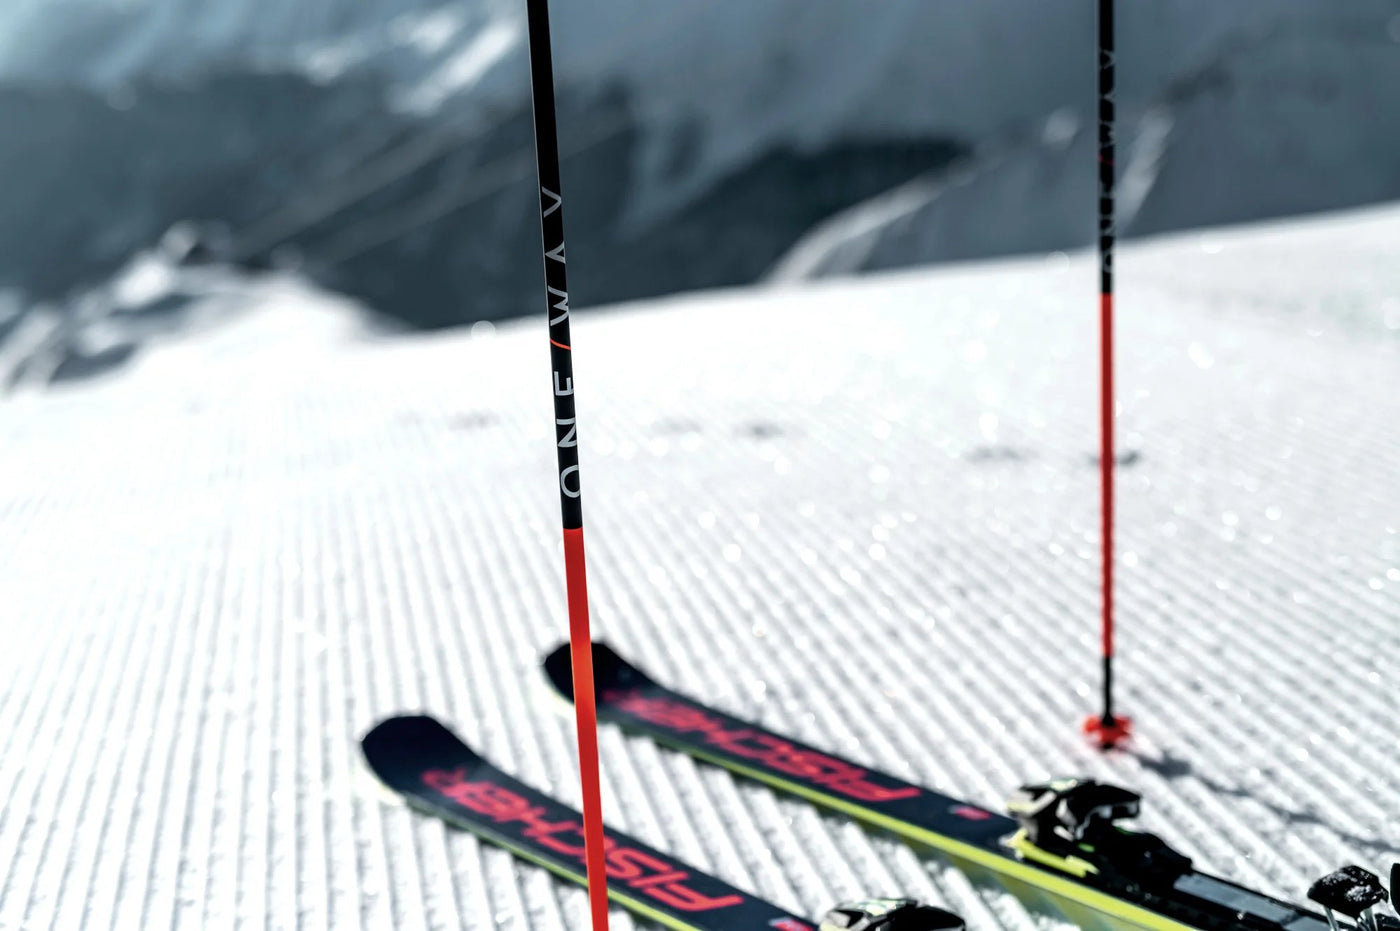 Power Ski - Skistöcke stecken in Schnee neben Ski